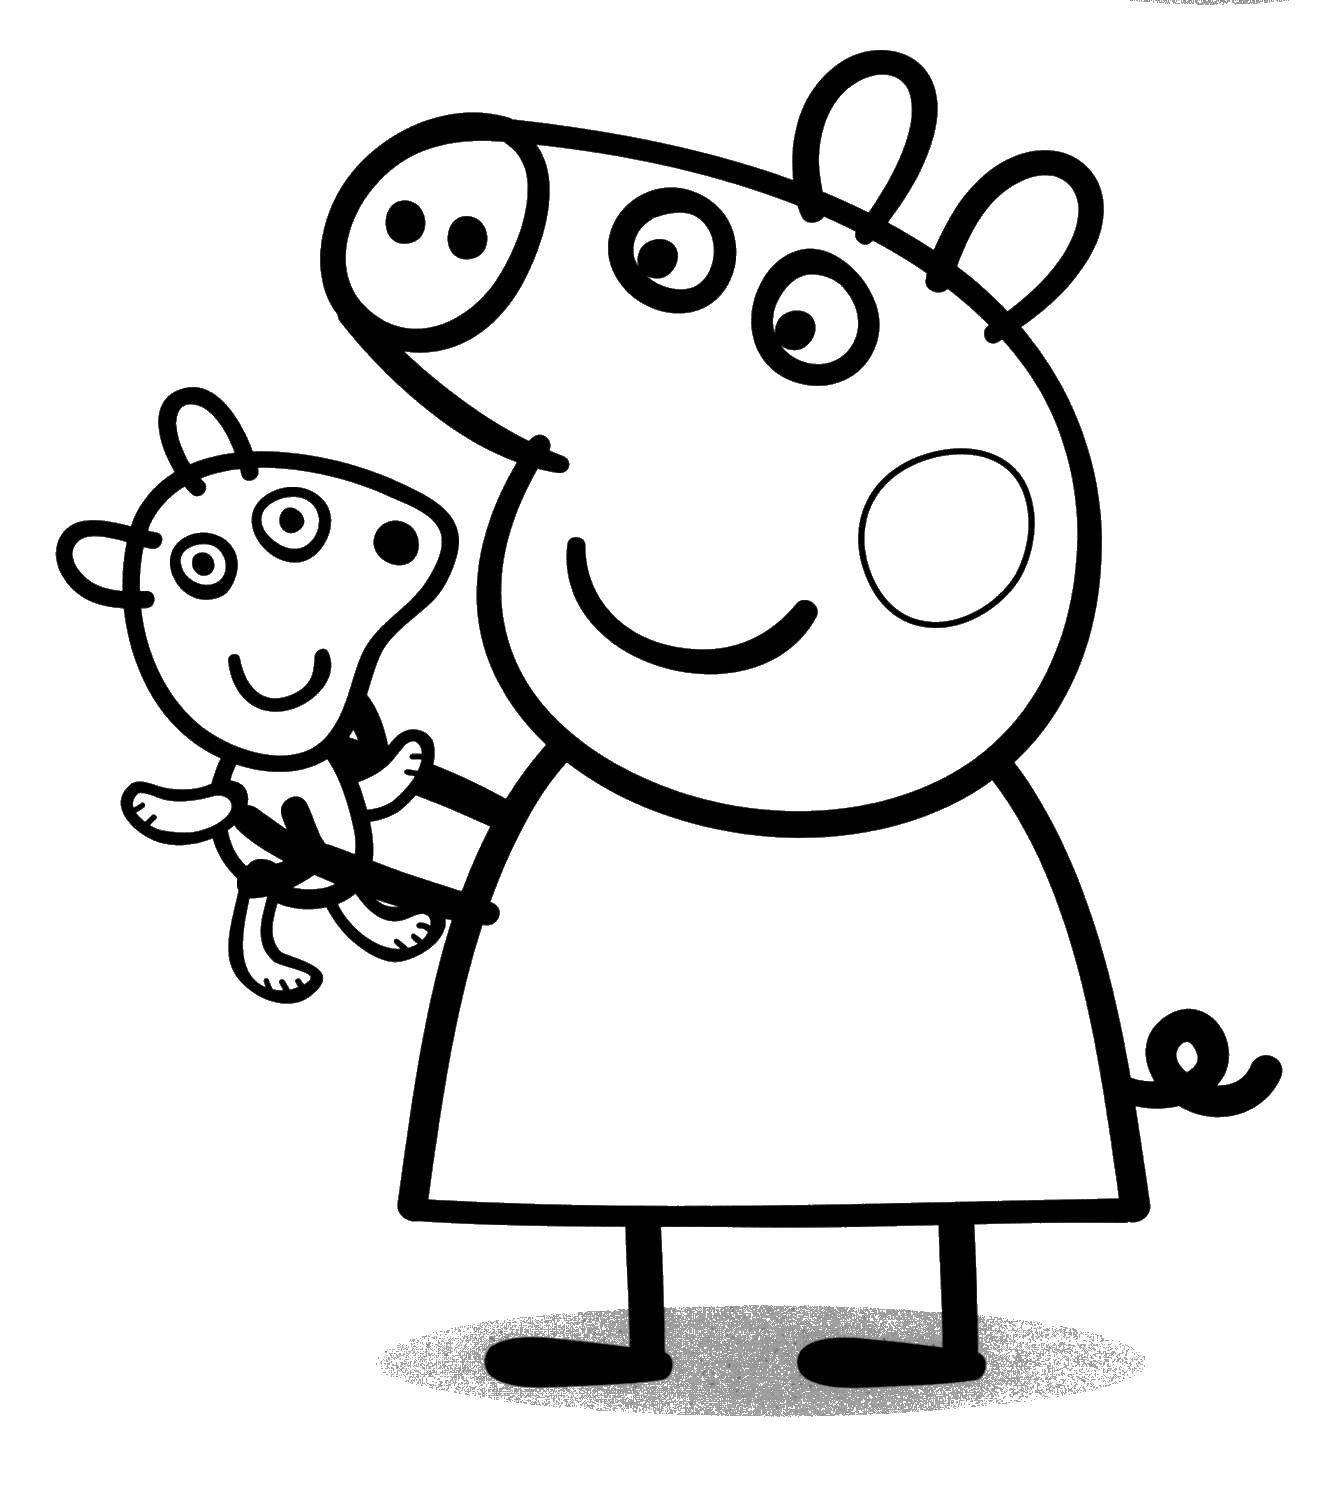 Познавательные и забавные раскраски для детей про свинку Пеппу  Свинка пеппа с игрушкой